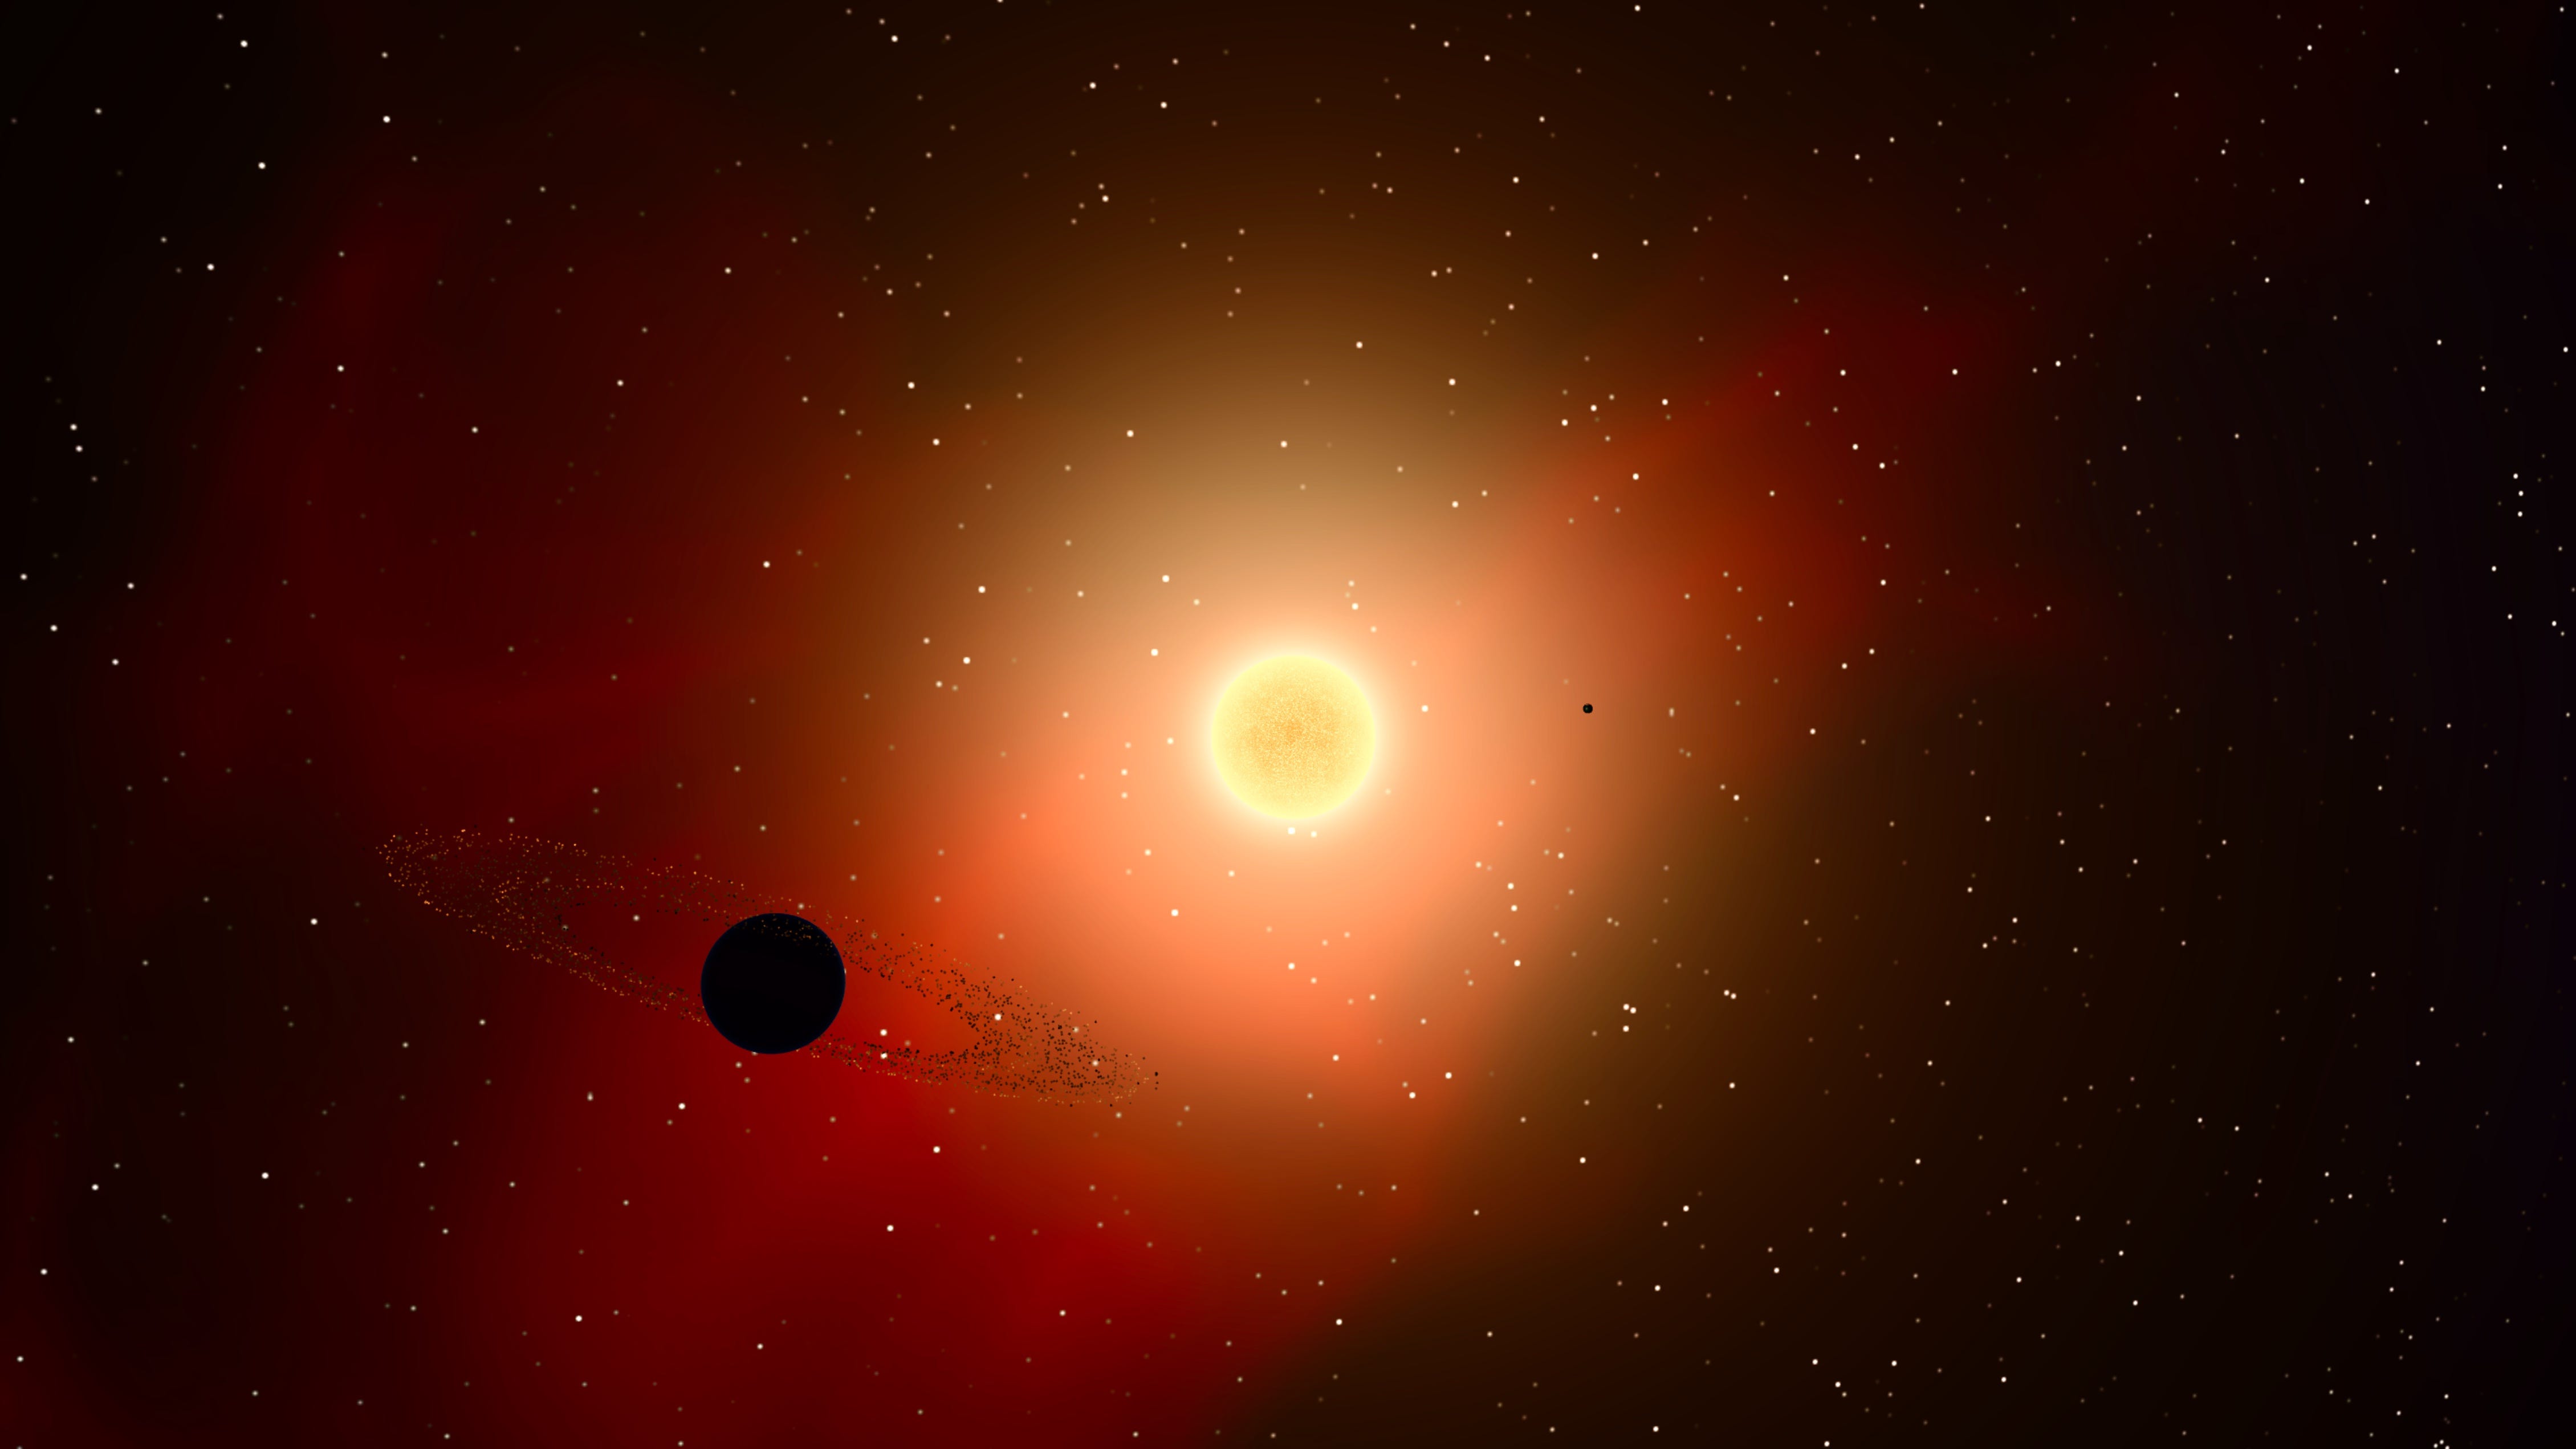 alpha centauri from sun